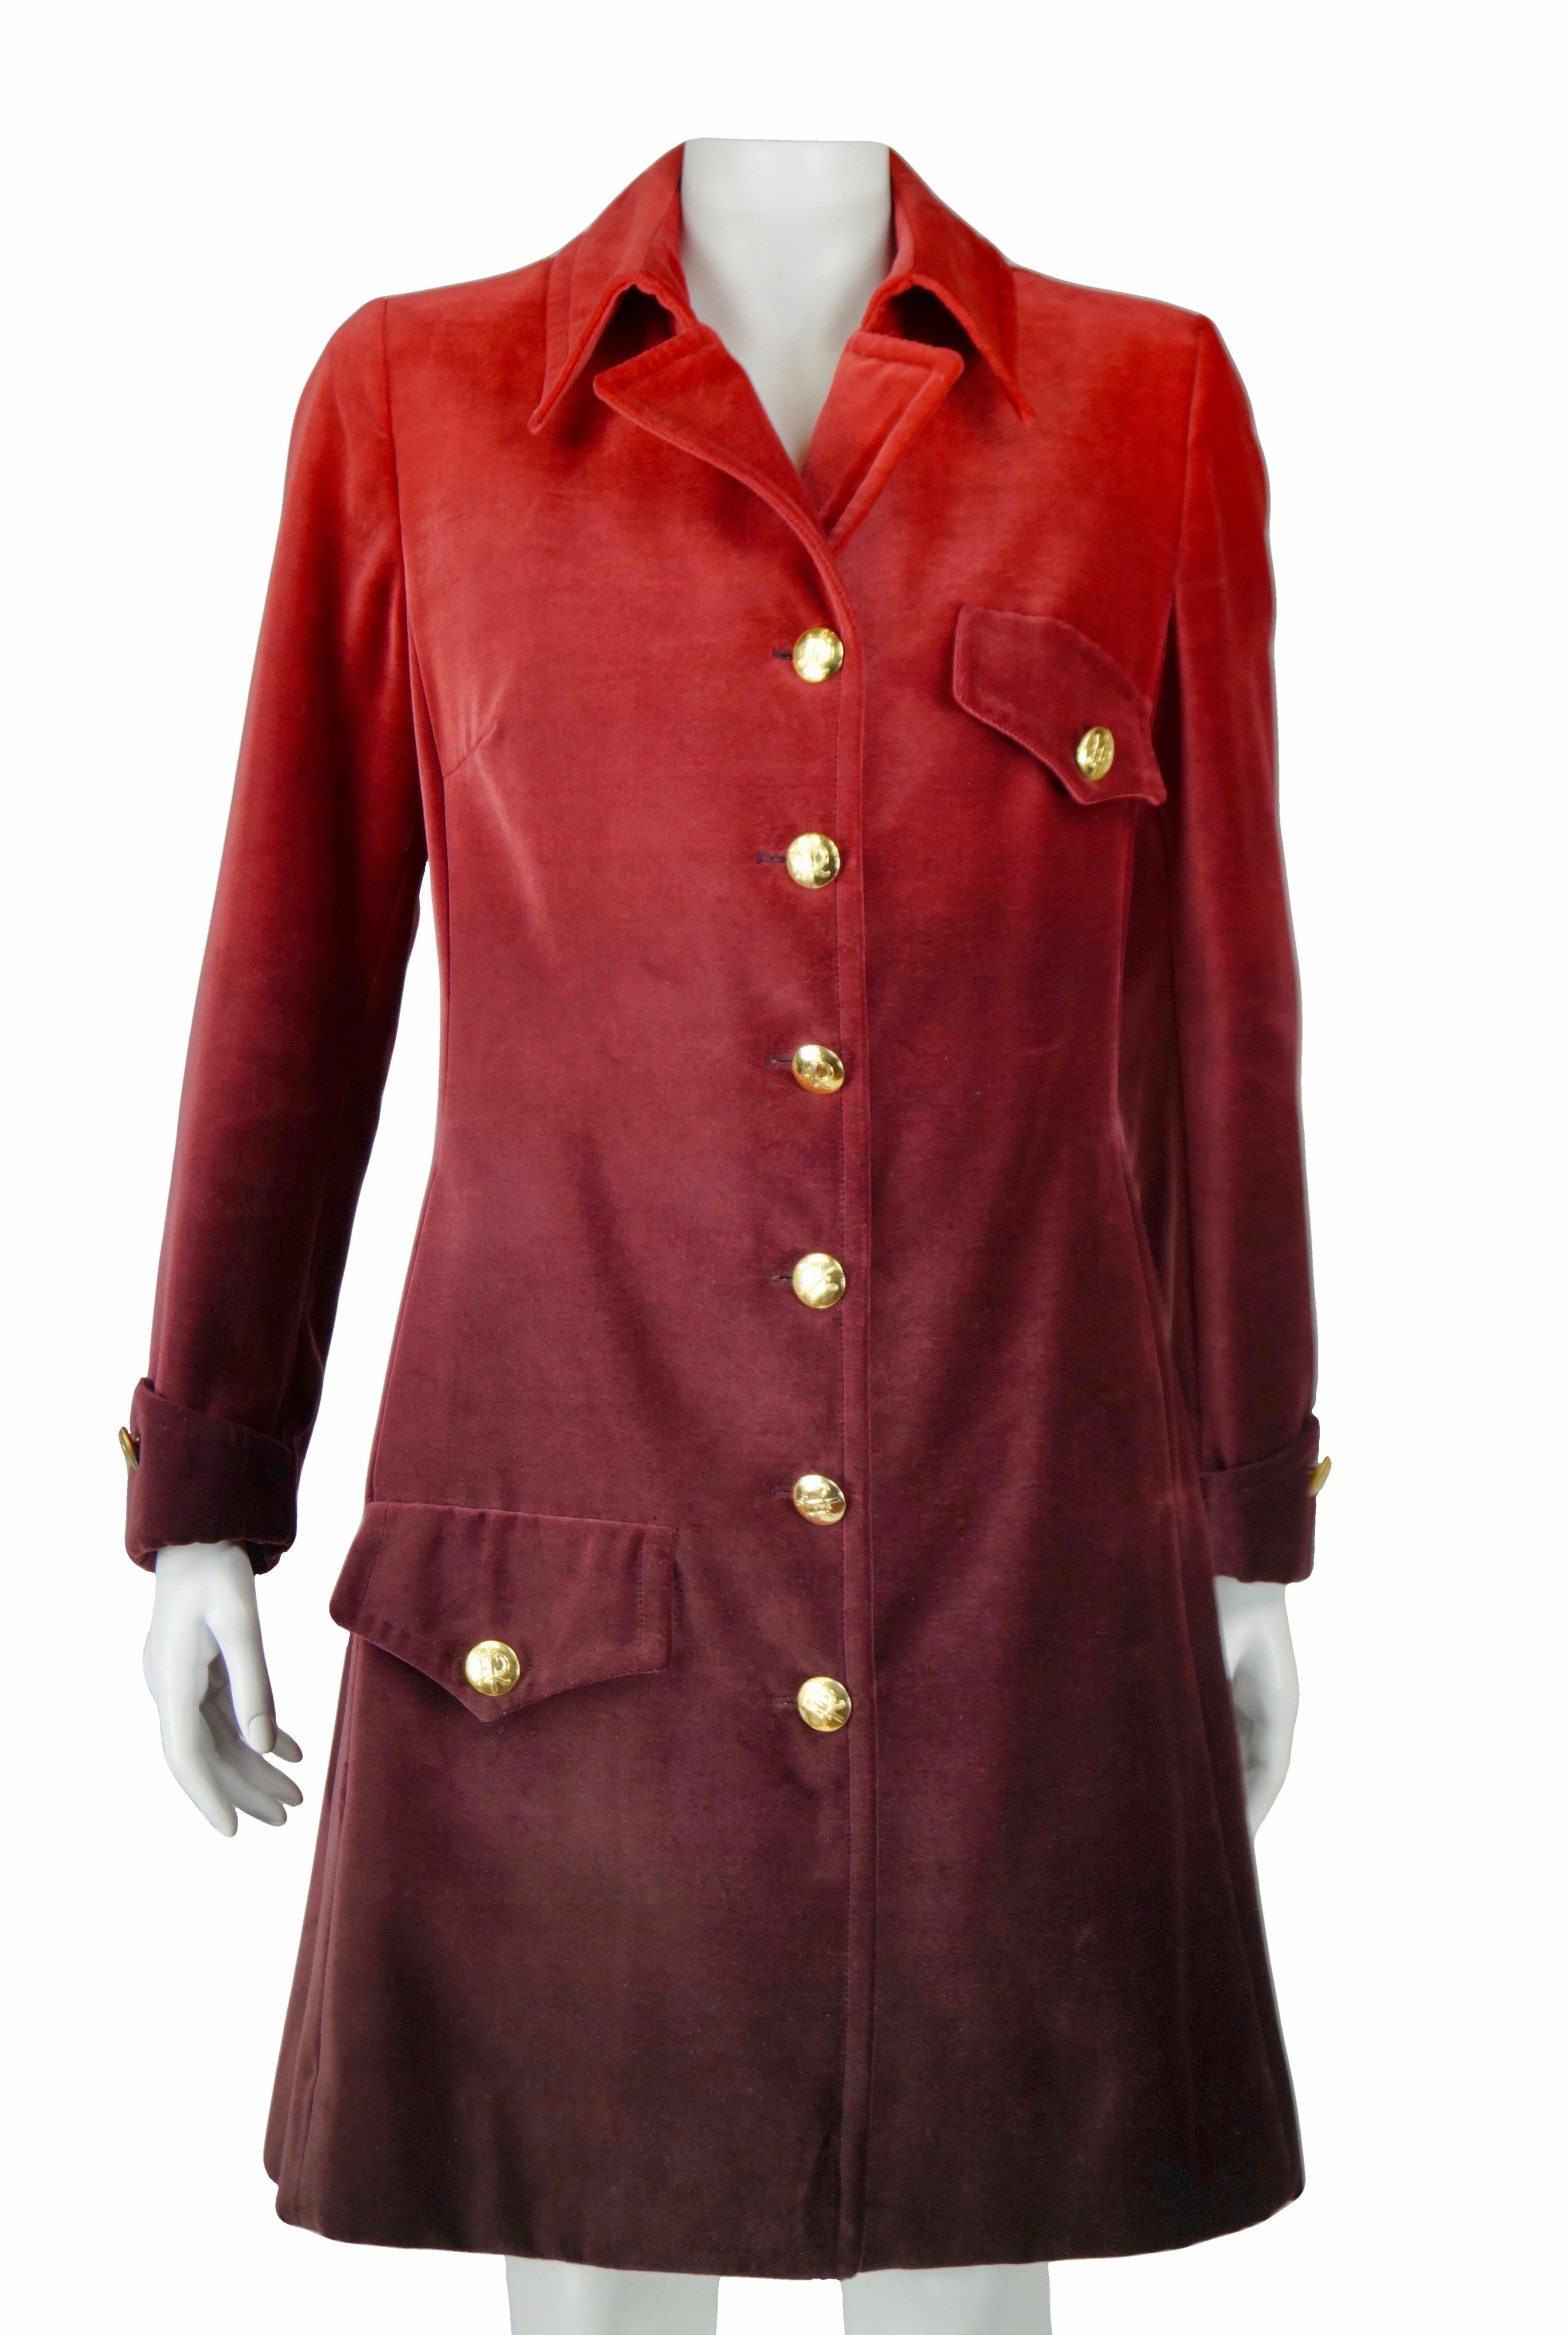 Roberta di Camerino manteau en velours rouge dégradé vintage 70s
Style militaire avec boutons dorés avec le Monogram Roberta di Camerino.
Velours de coton
Doublé
L'étiquette de taille et la composition du tissu ne sont pas présentes.
Fabriqué en